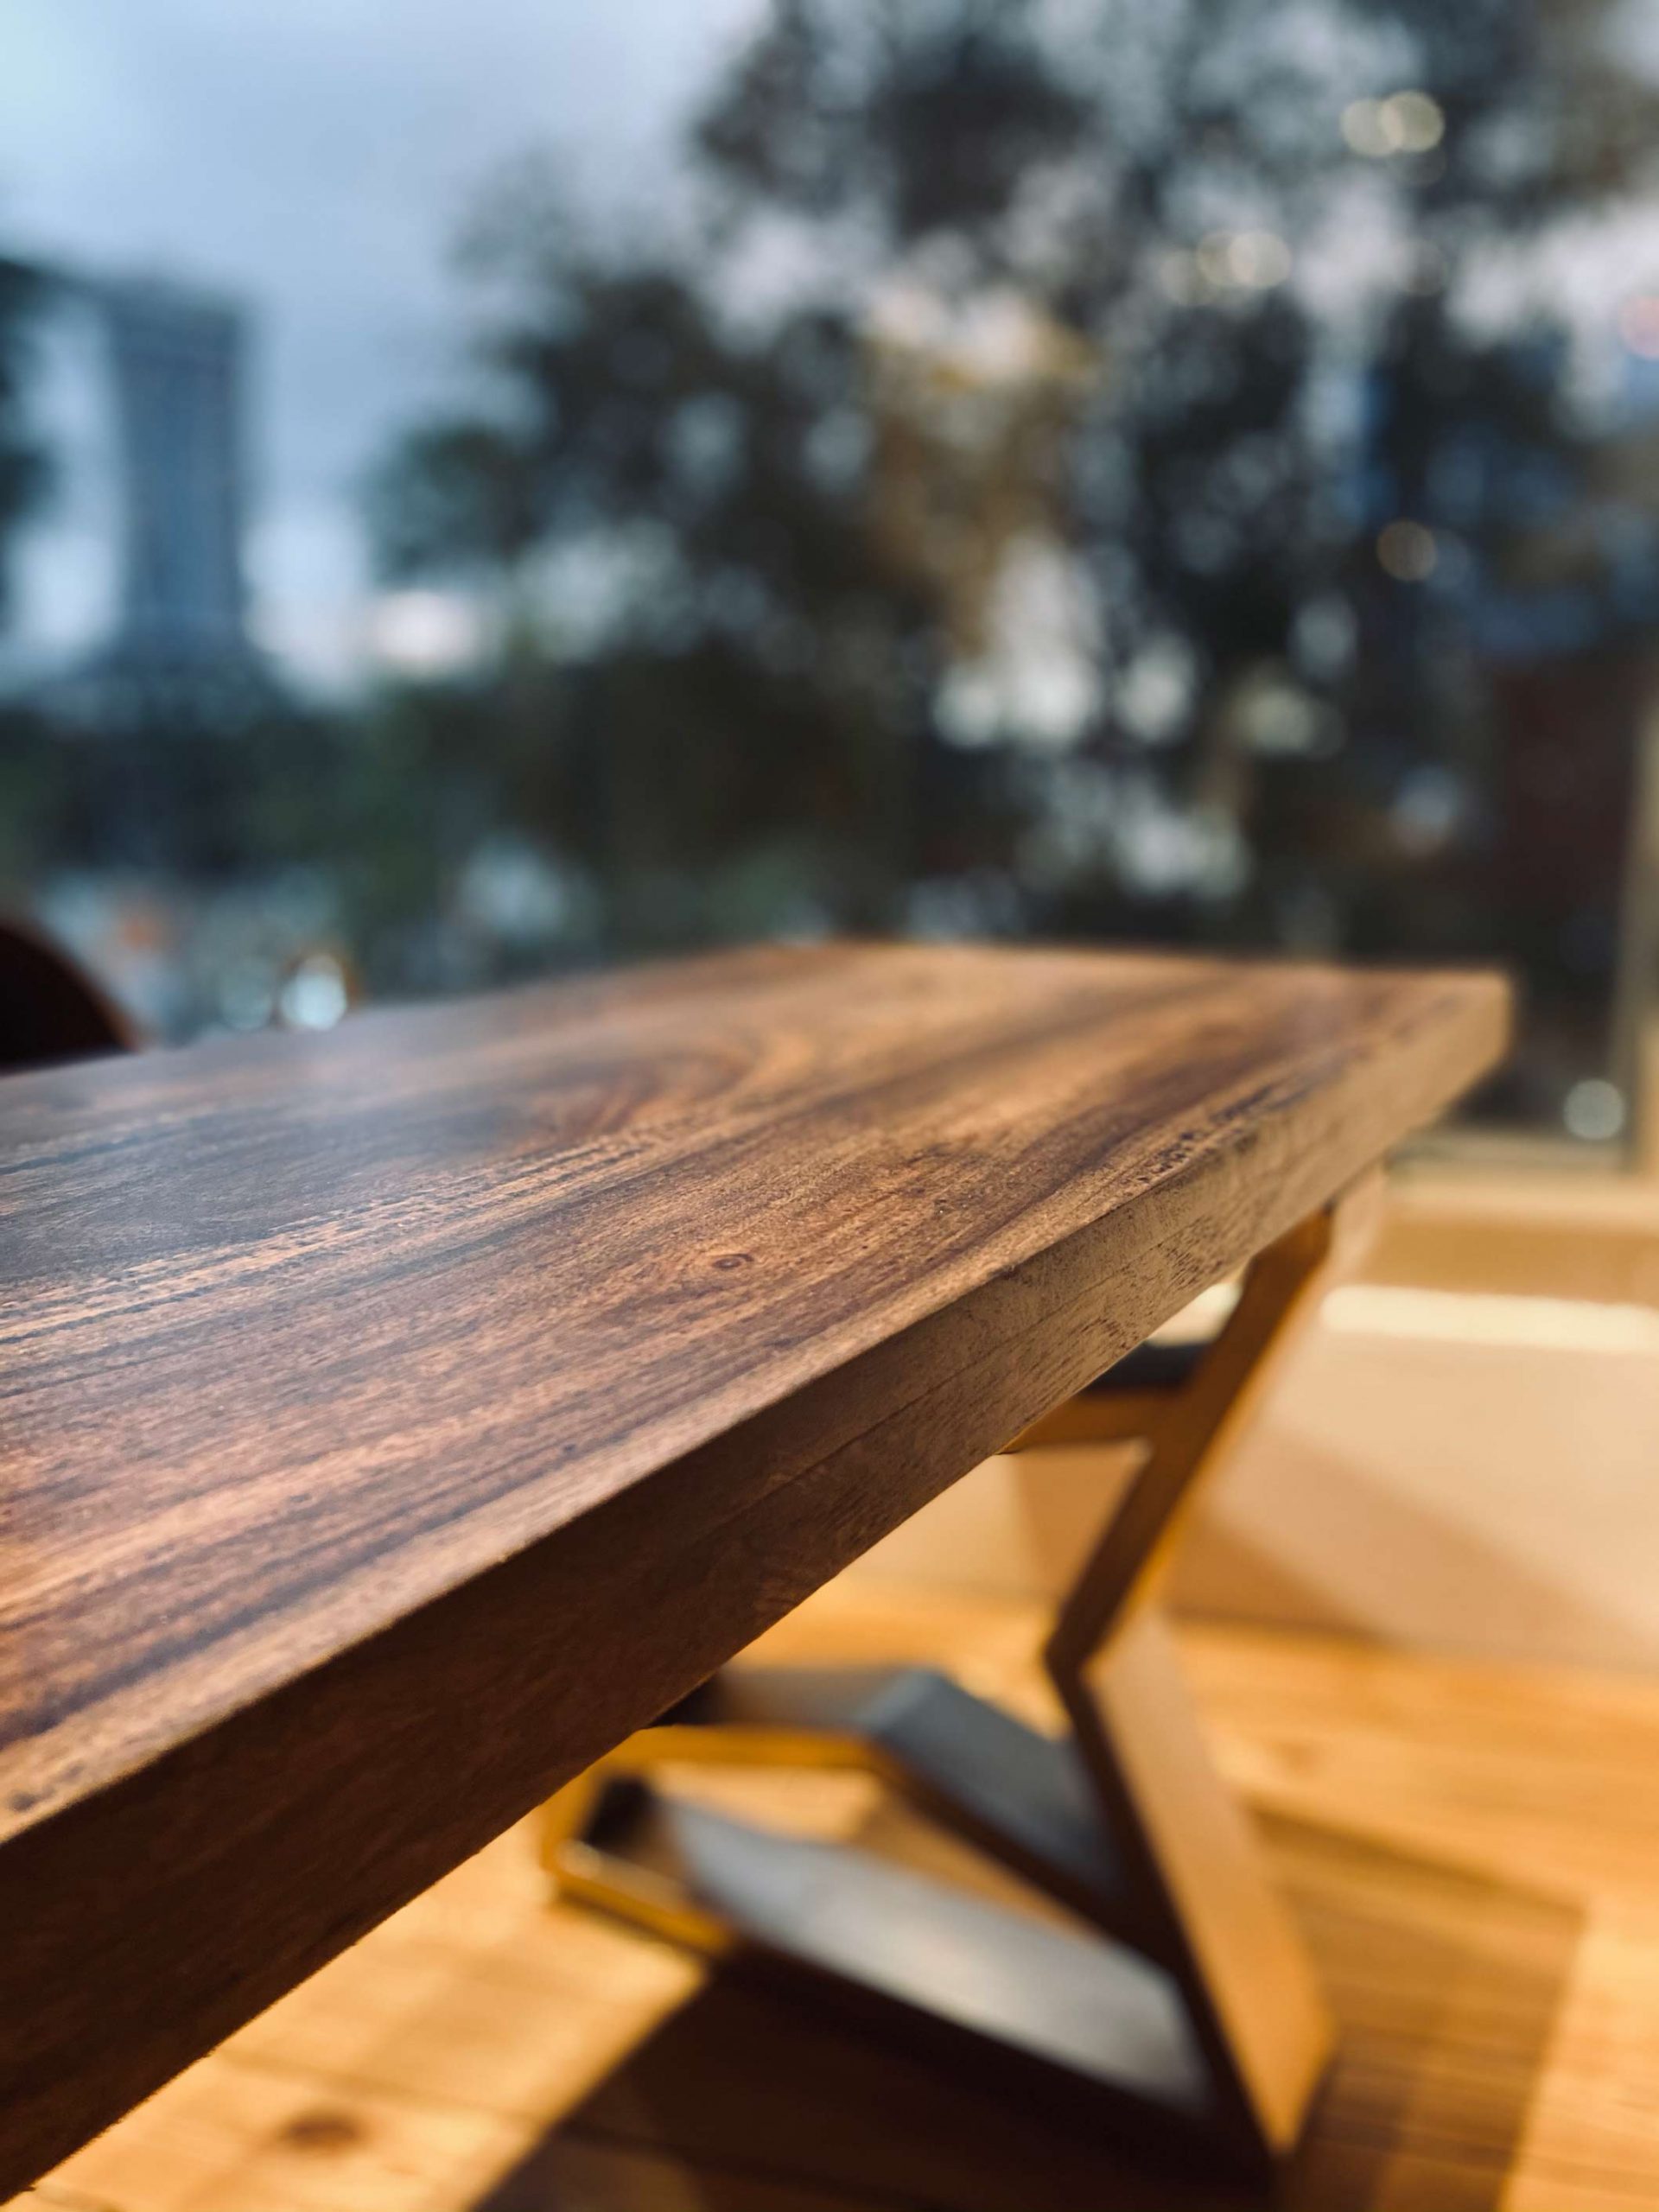 Suar Wood Table Angled View